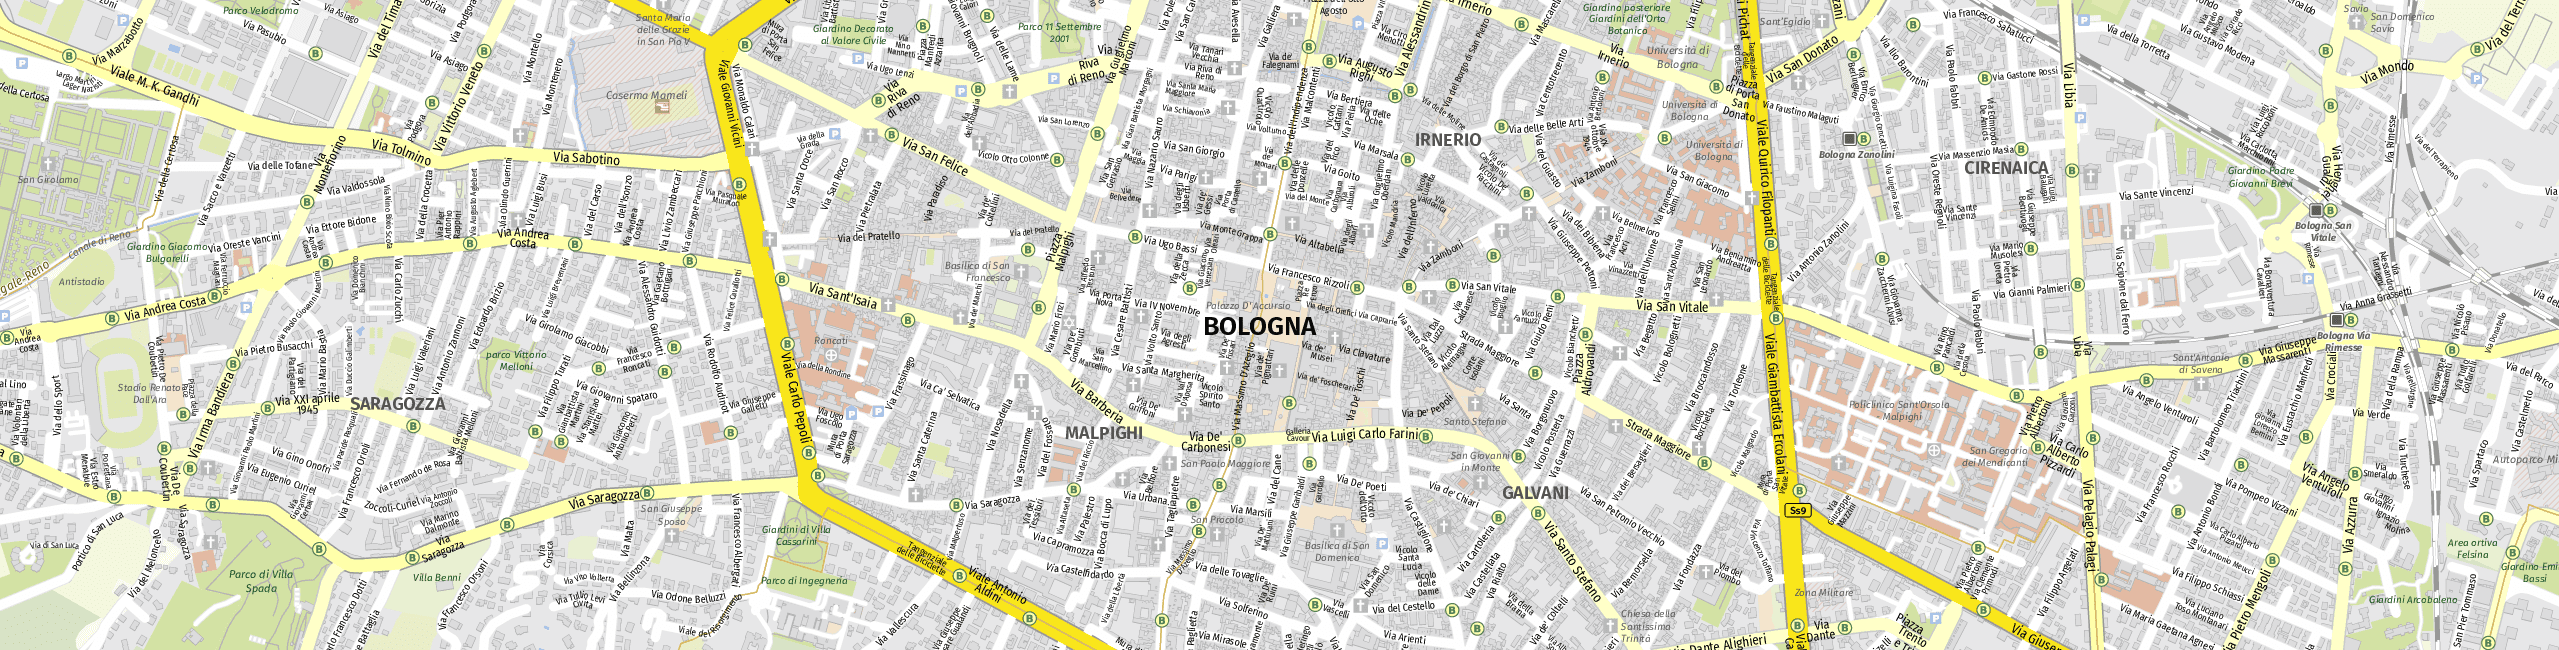 Stadtplan Bologna zum Downloaden.